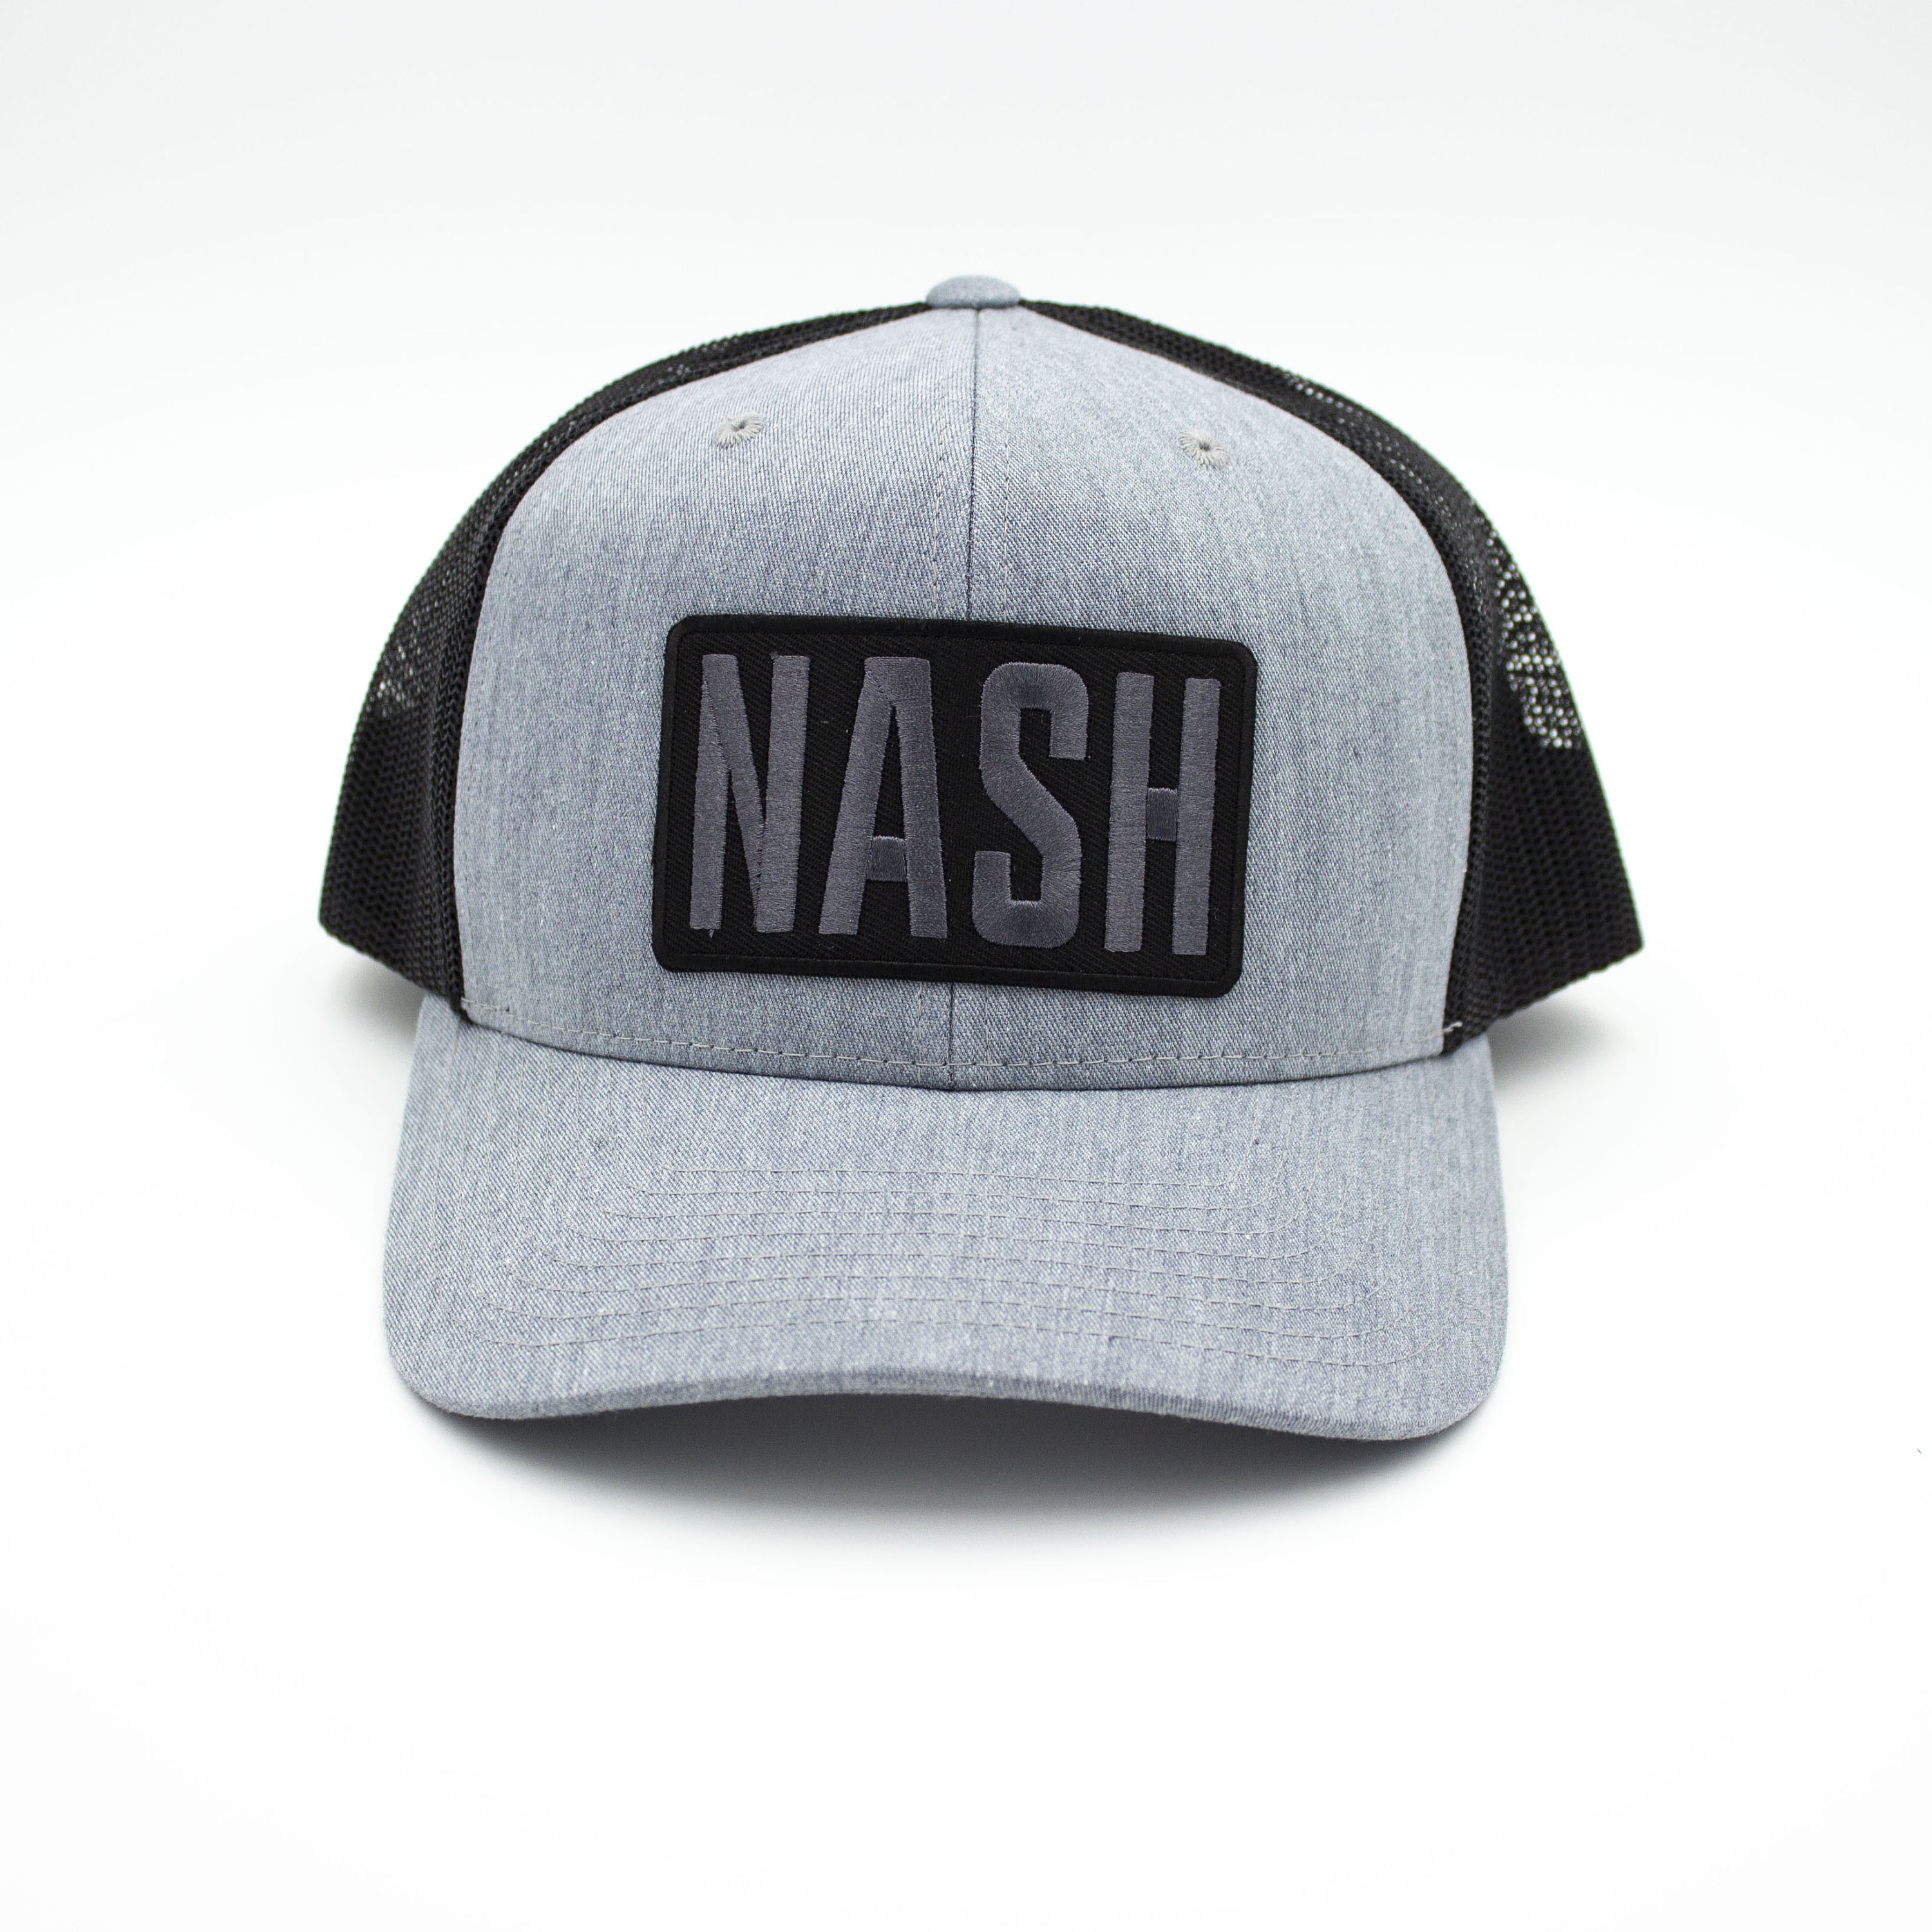 Nash Patch Trucker Cap